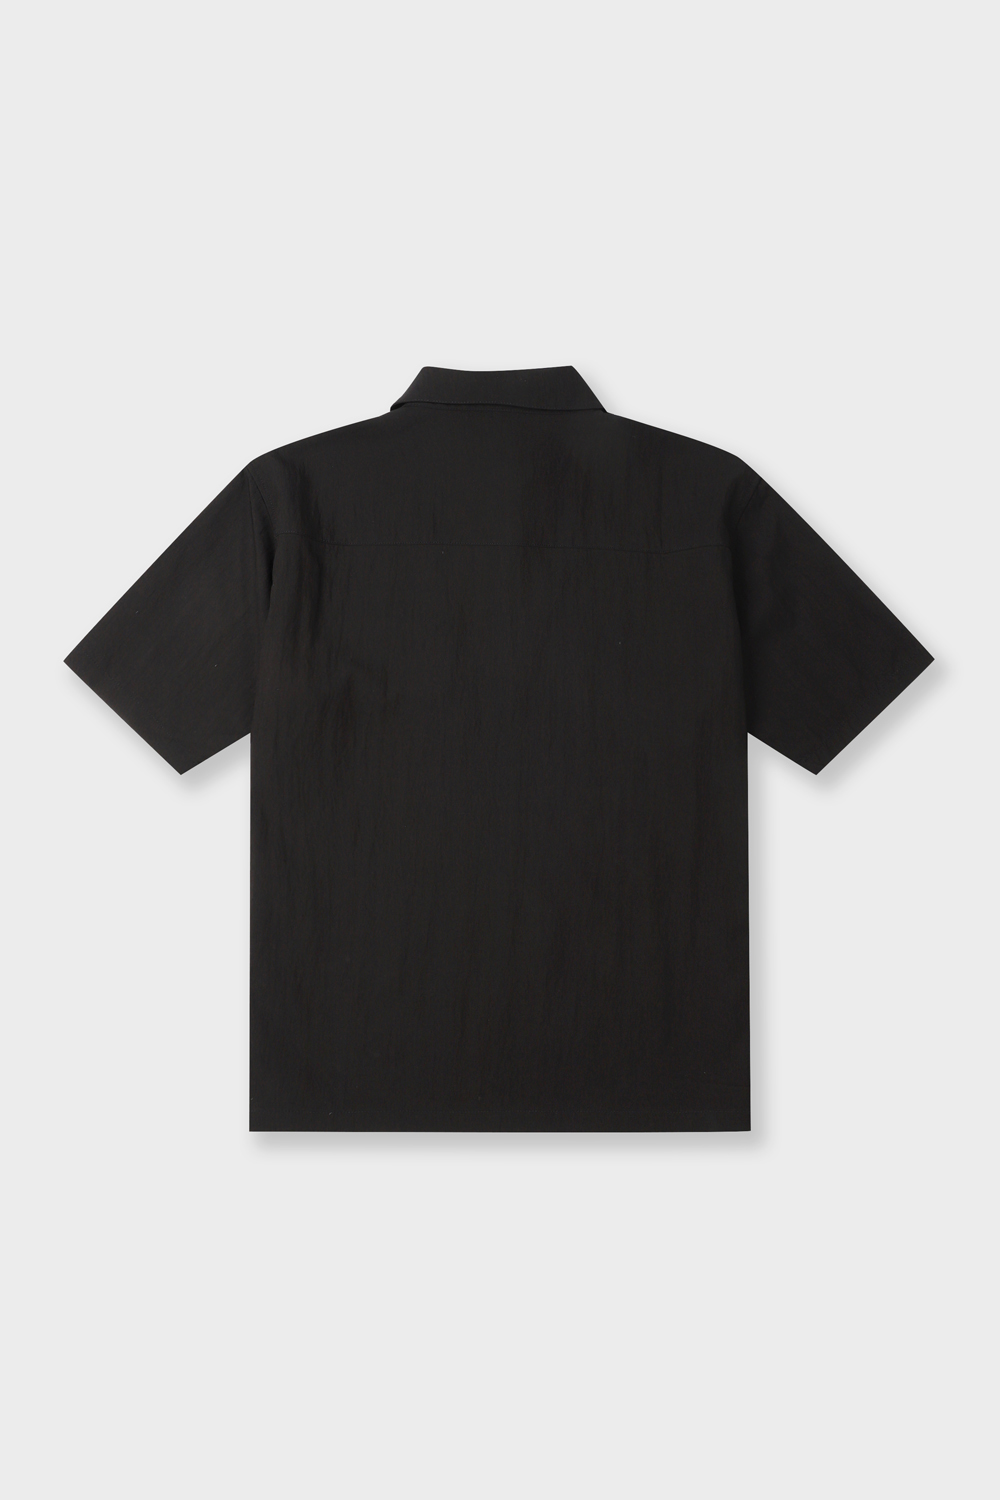 [공식스토어] 아노락 셔츠 집업 반팔셔츠 블랙 BN4MBA676BK